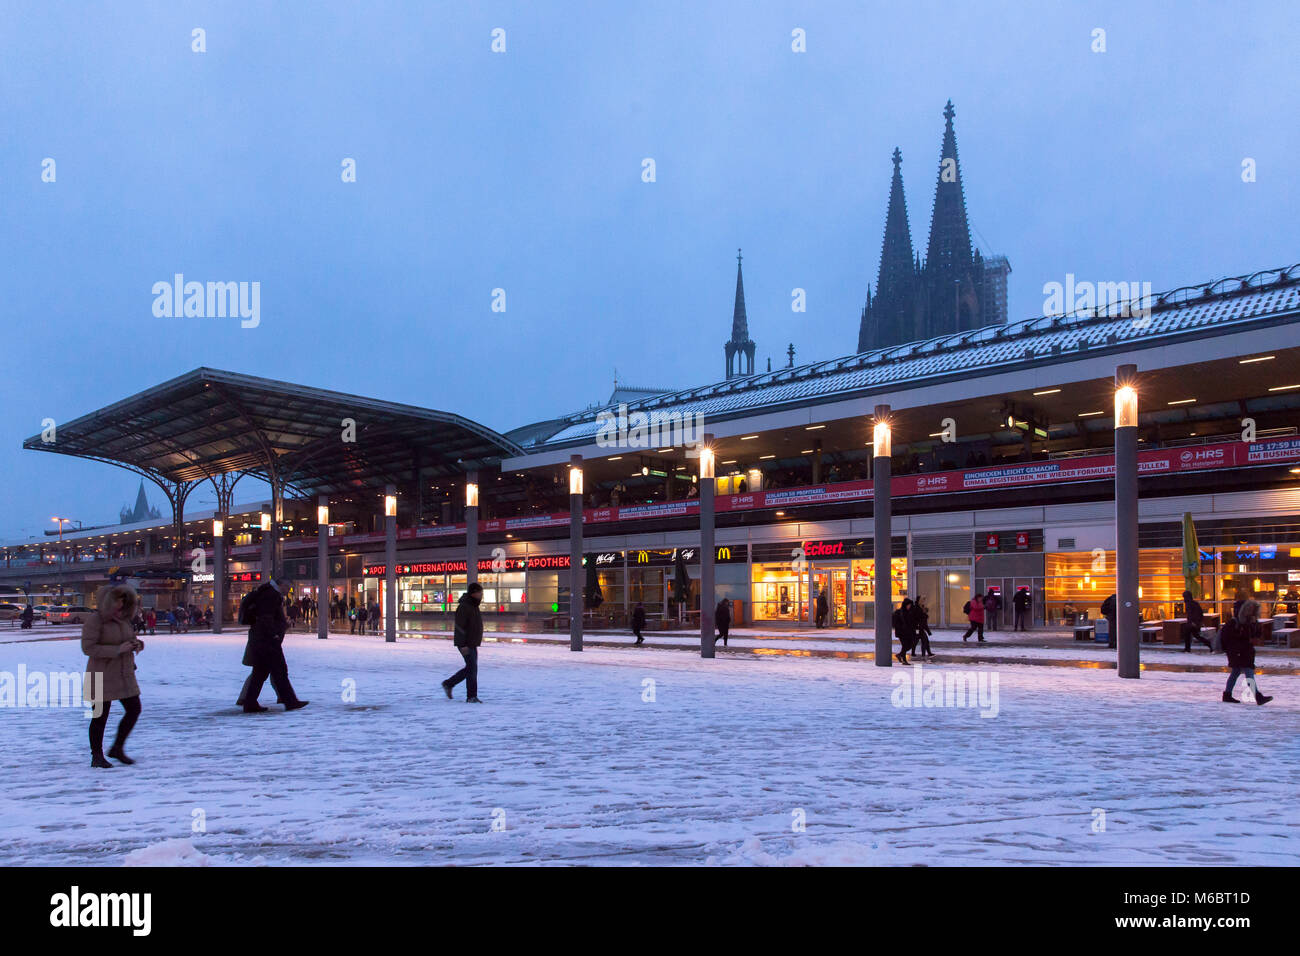 Germania, Colonia, del Breslauer square presso la stazione principale e sullo sfondo la cattedrale, neve in inverno. Deutschland, Koeln, der Breslauer Platz un Foto Stock